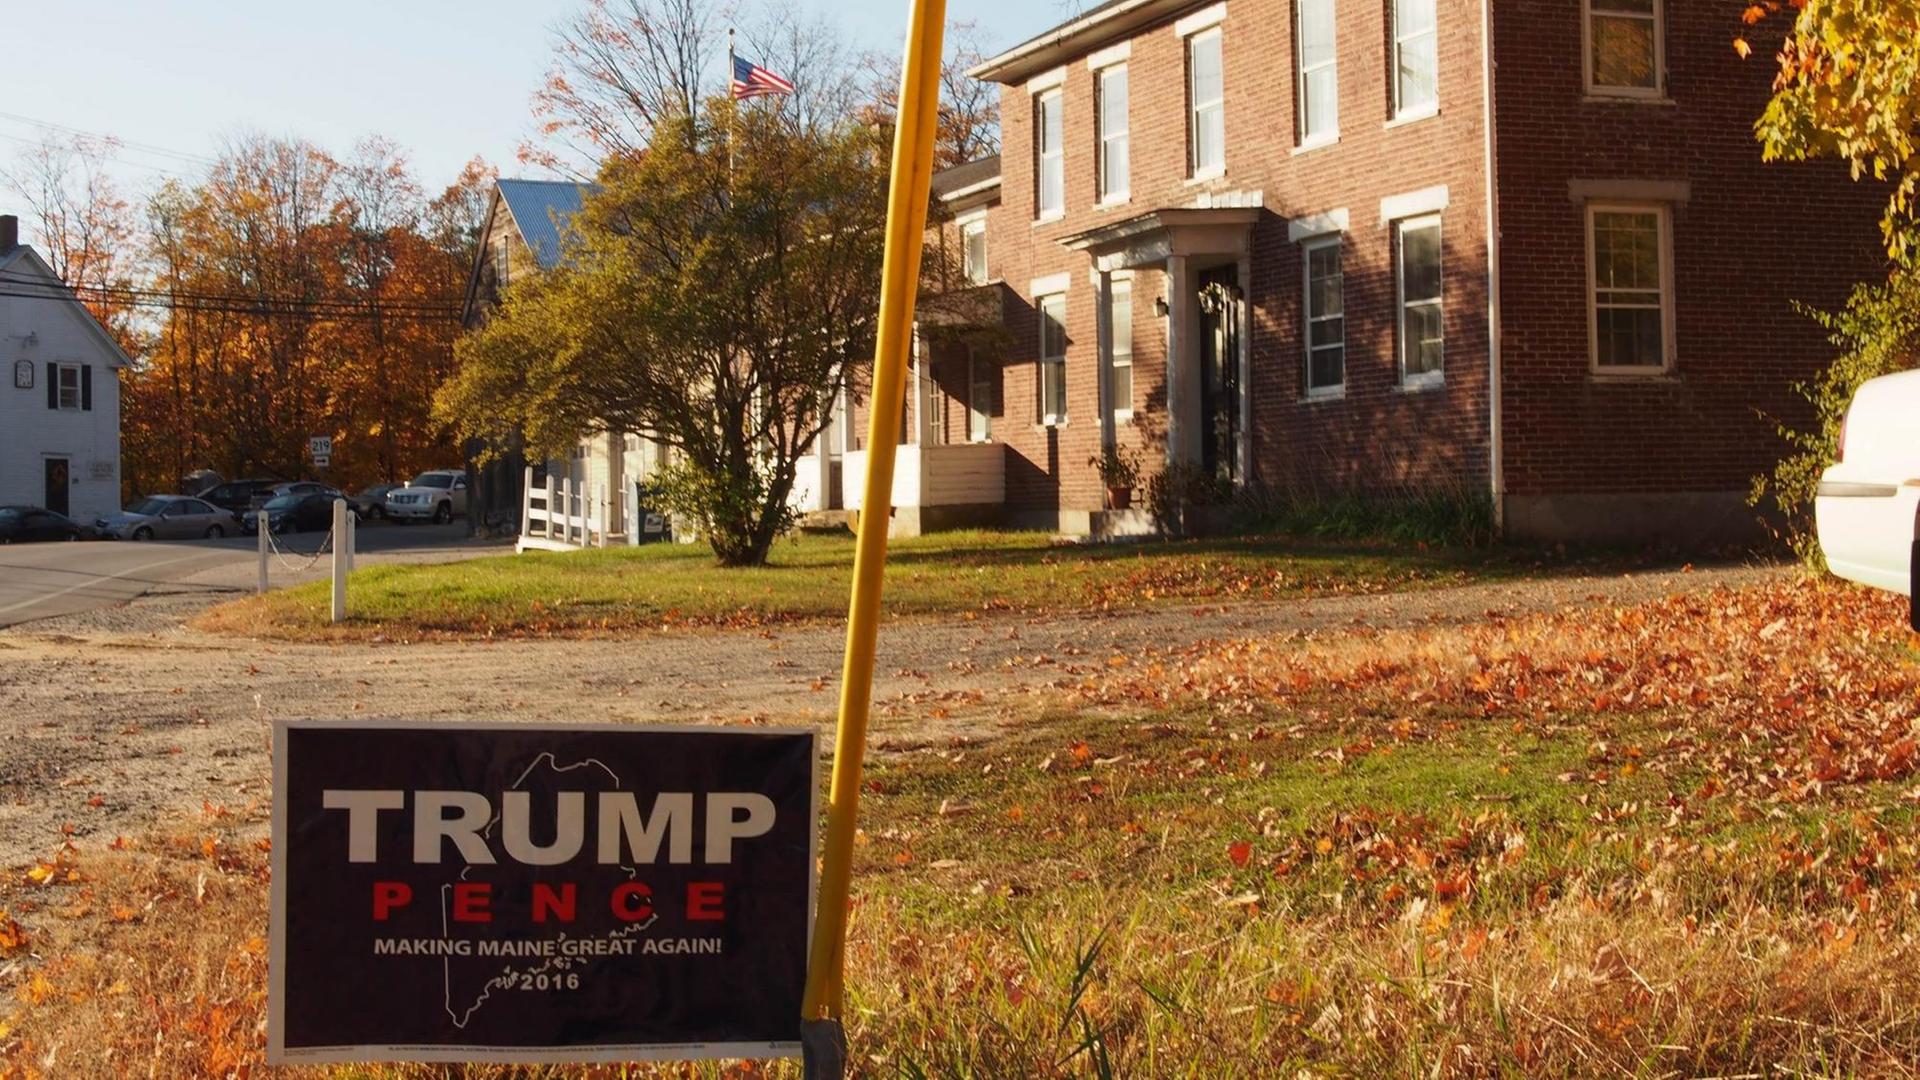 Eine Wohnsiedlung im US-Ostküstenstaat Maine im Herbst. Im Vordergrund ein Wahlplakat für Donald Trump.